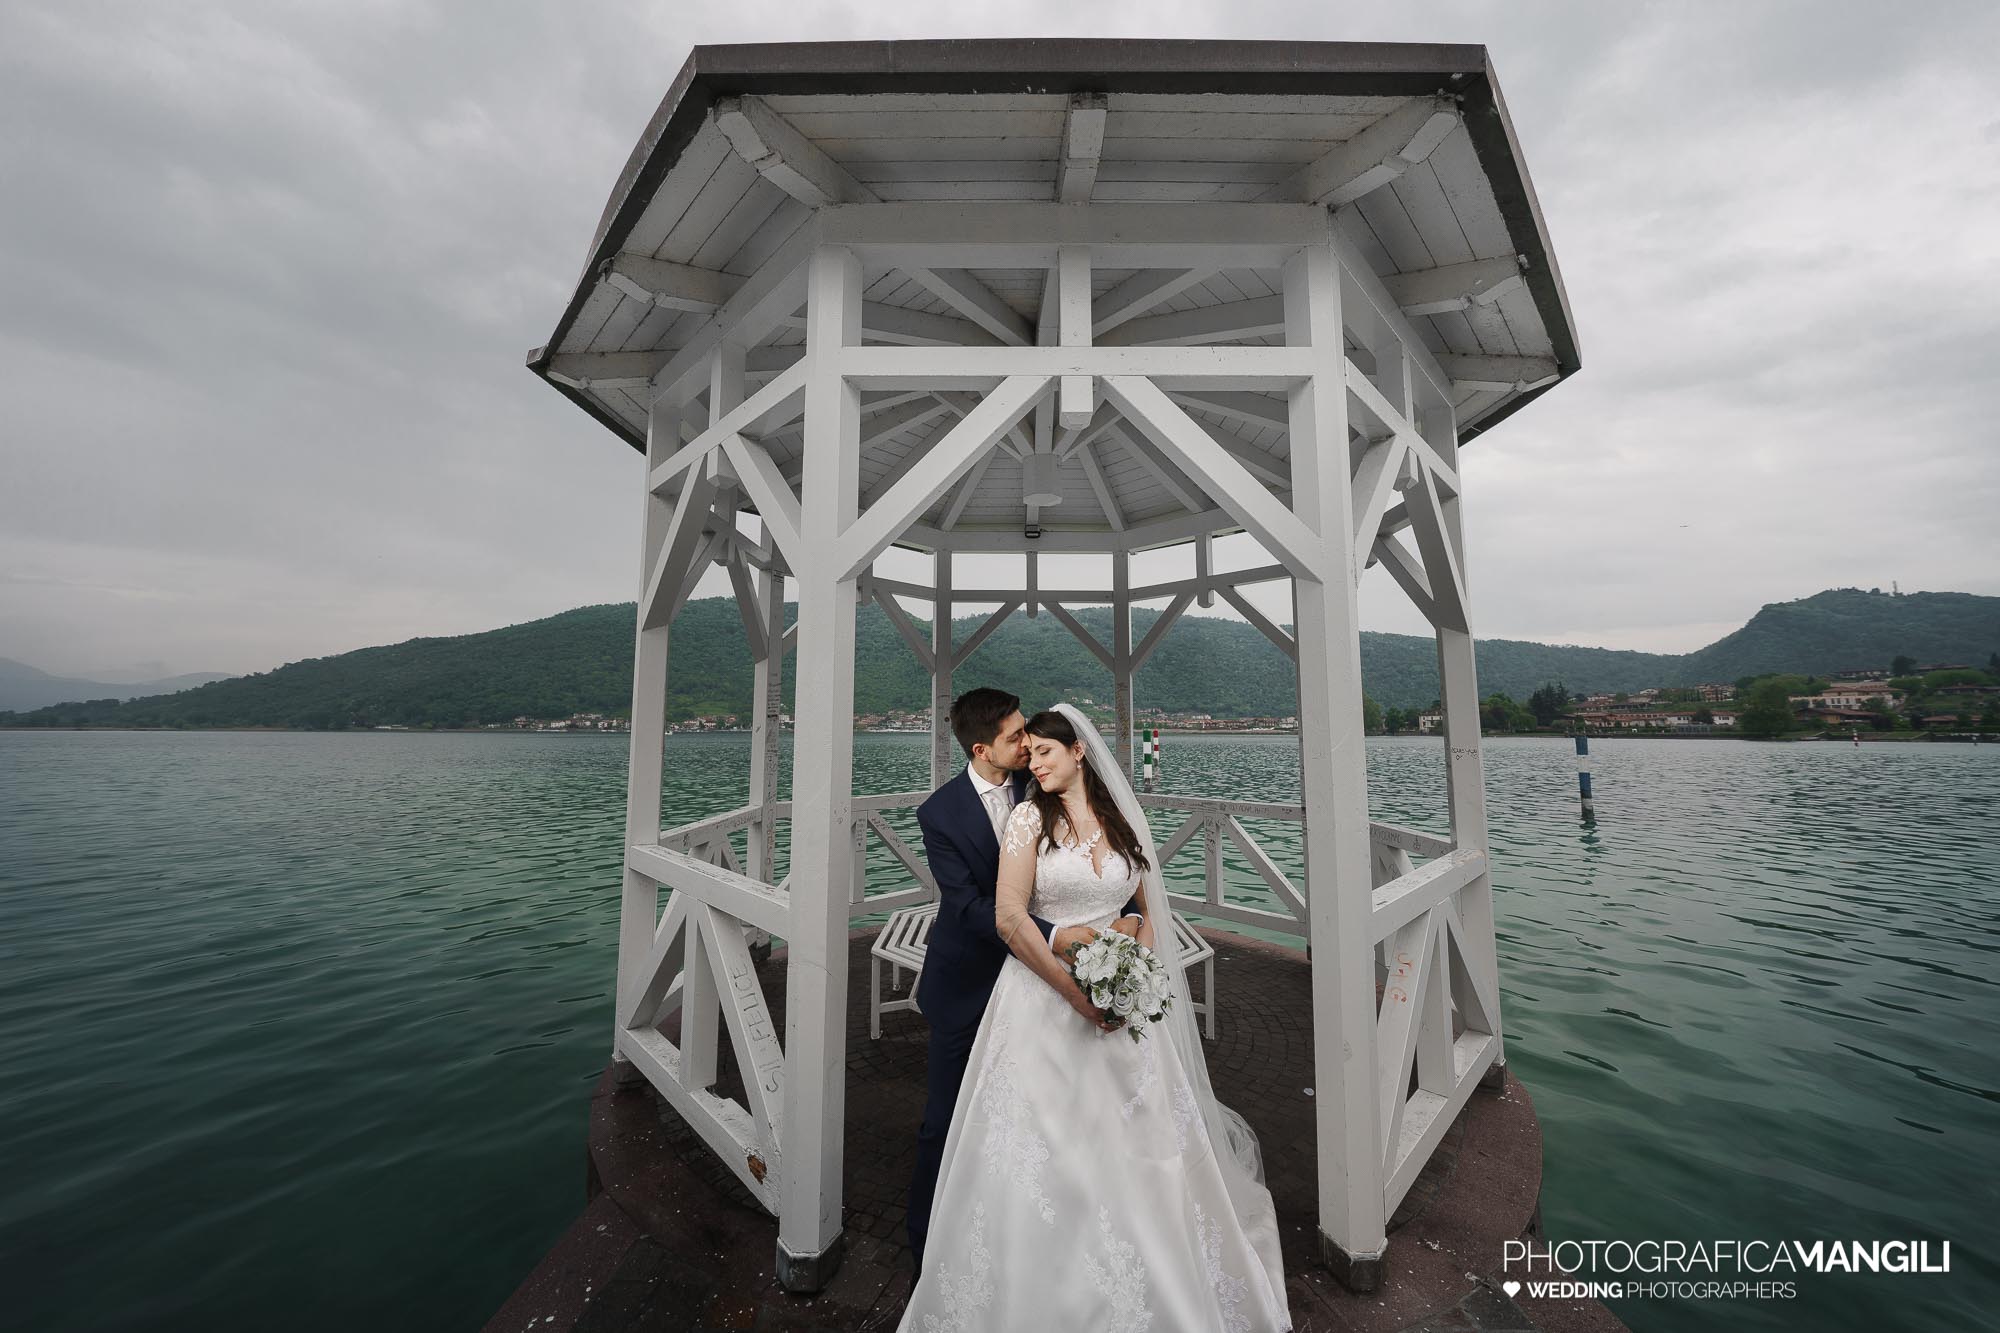 047 servizio fotografico wedding reportage ritratto sposi lungolago Sarnico lago Iseo Bergamo chiara oliviero